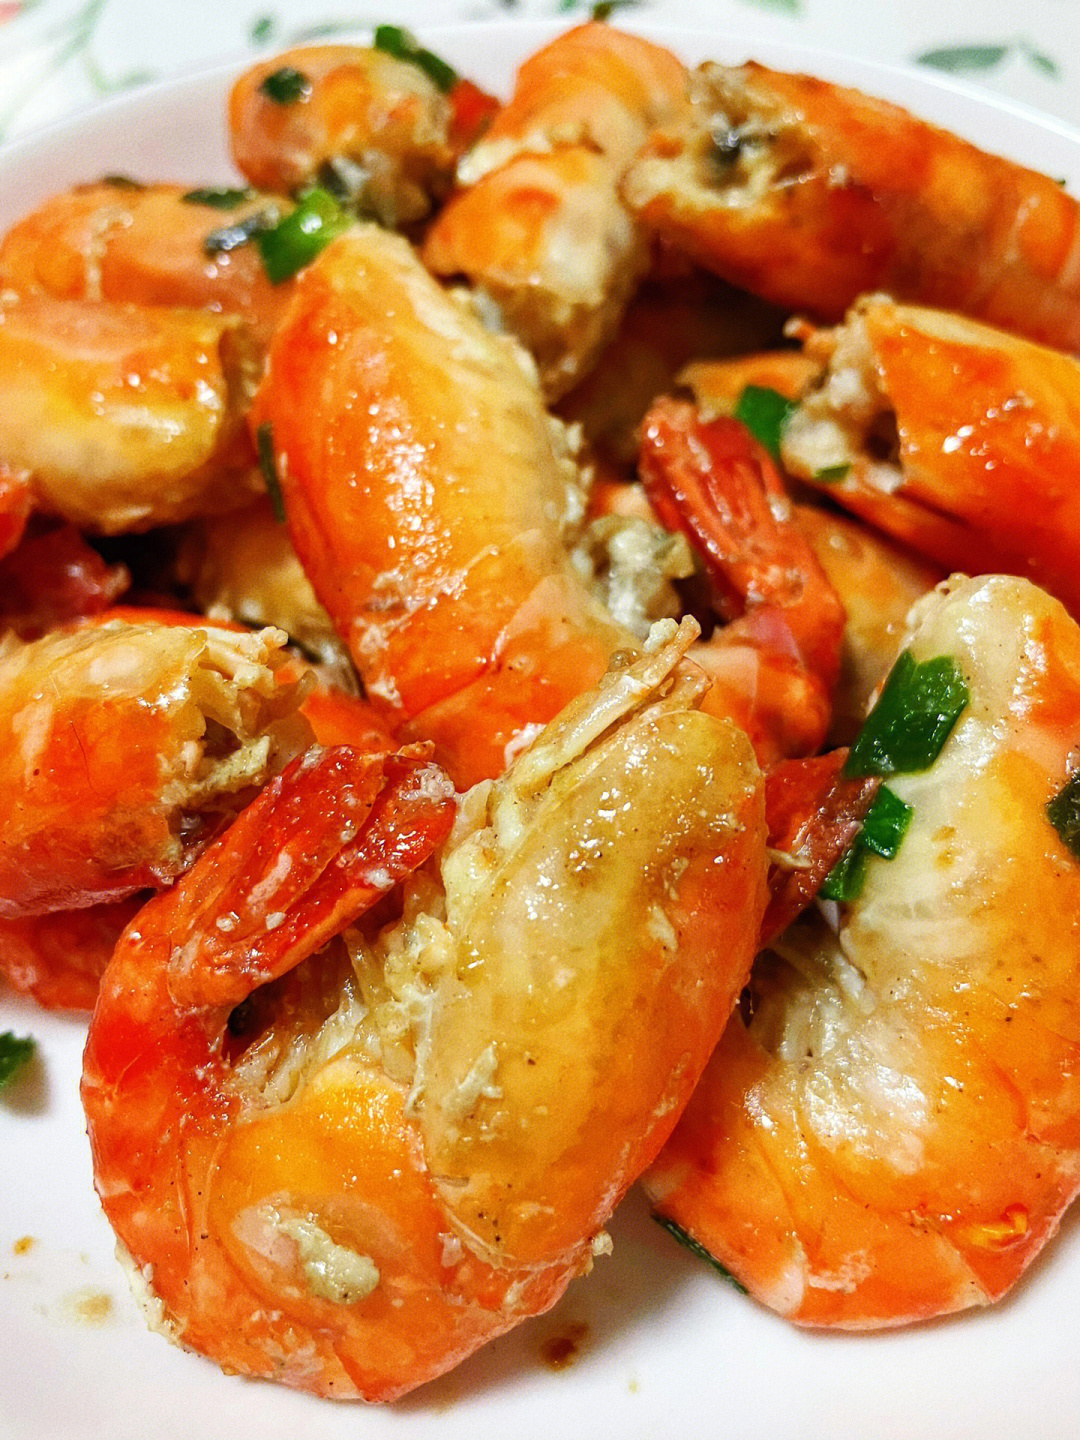 做法简单却能撞击味蕾的盐焗罗氏虾,鲜嫩无比每一只